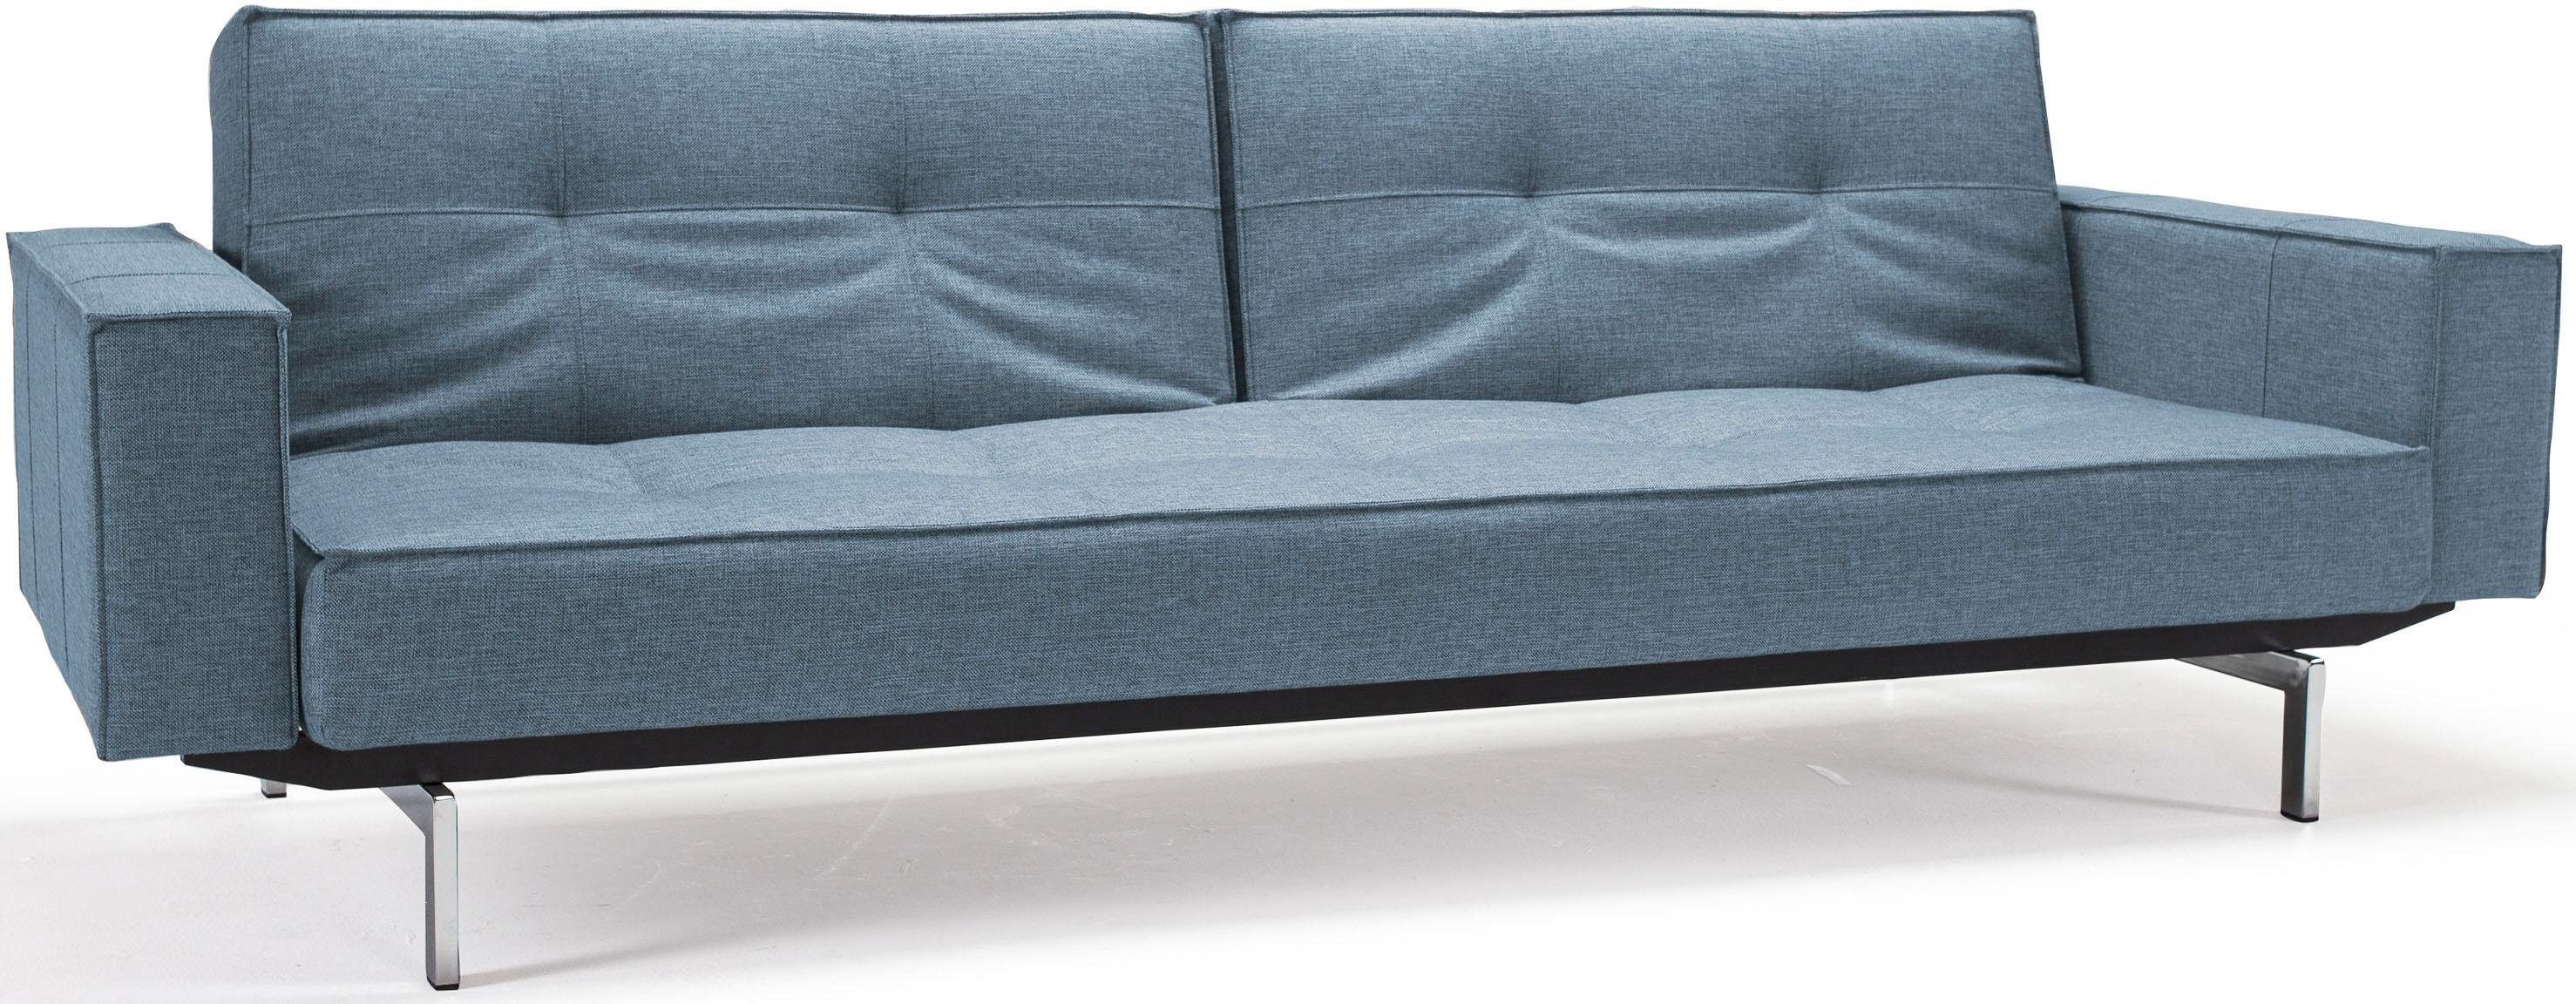 ™ Armlehne INNOVATION skandinavischen mit Splitback, LIVING und Design Sofa in Beinen, chromglänzenden